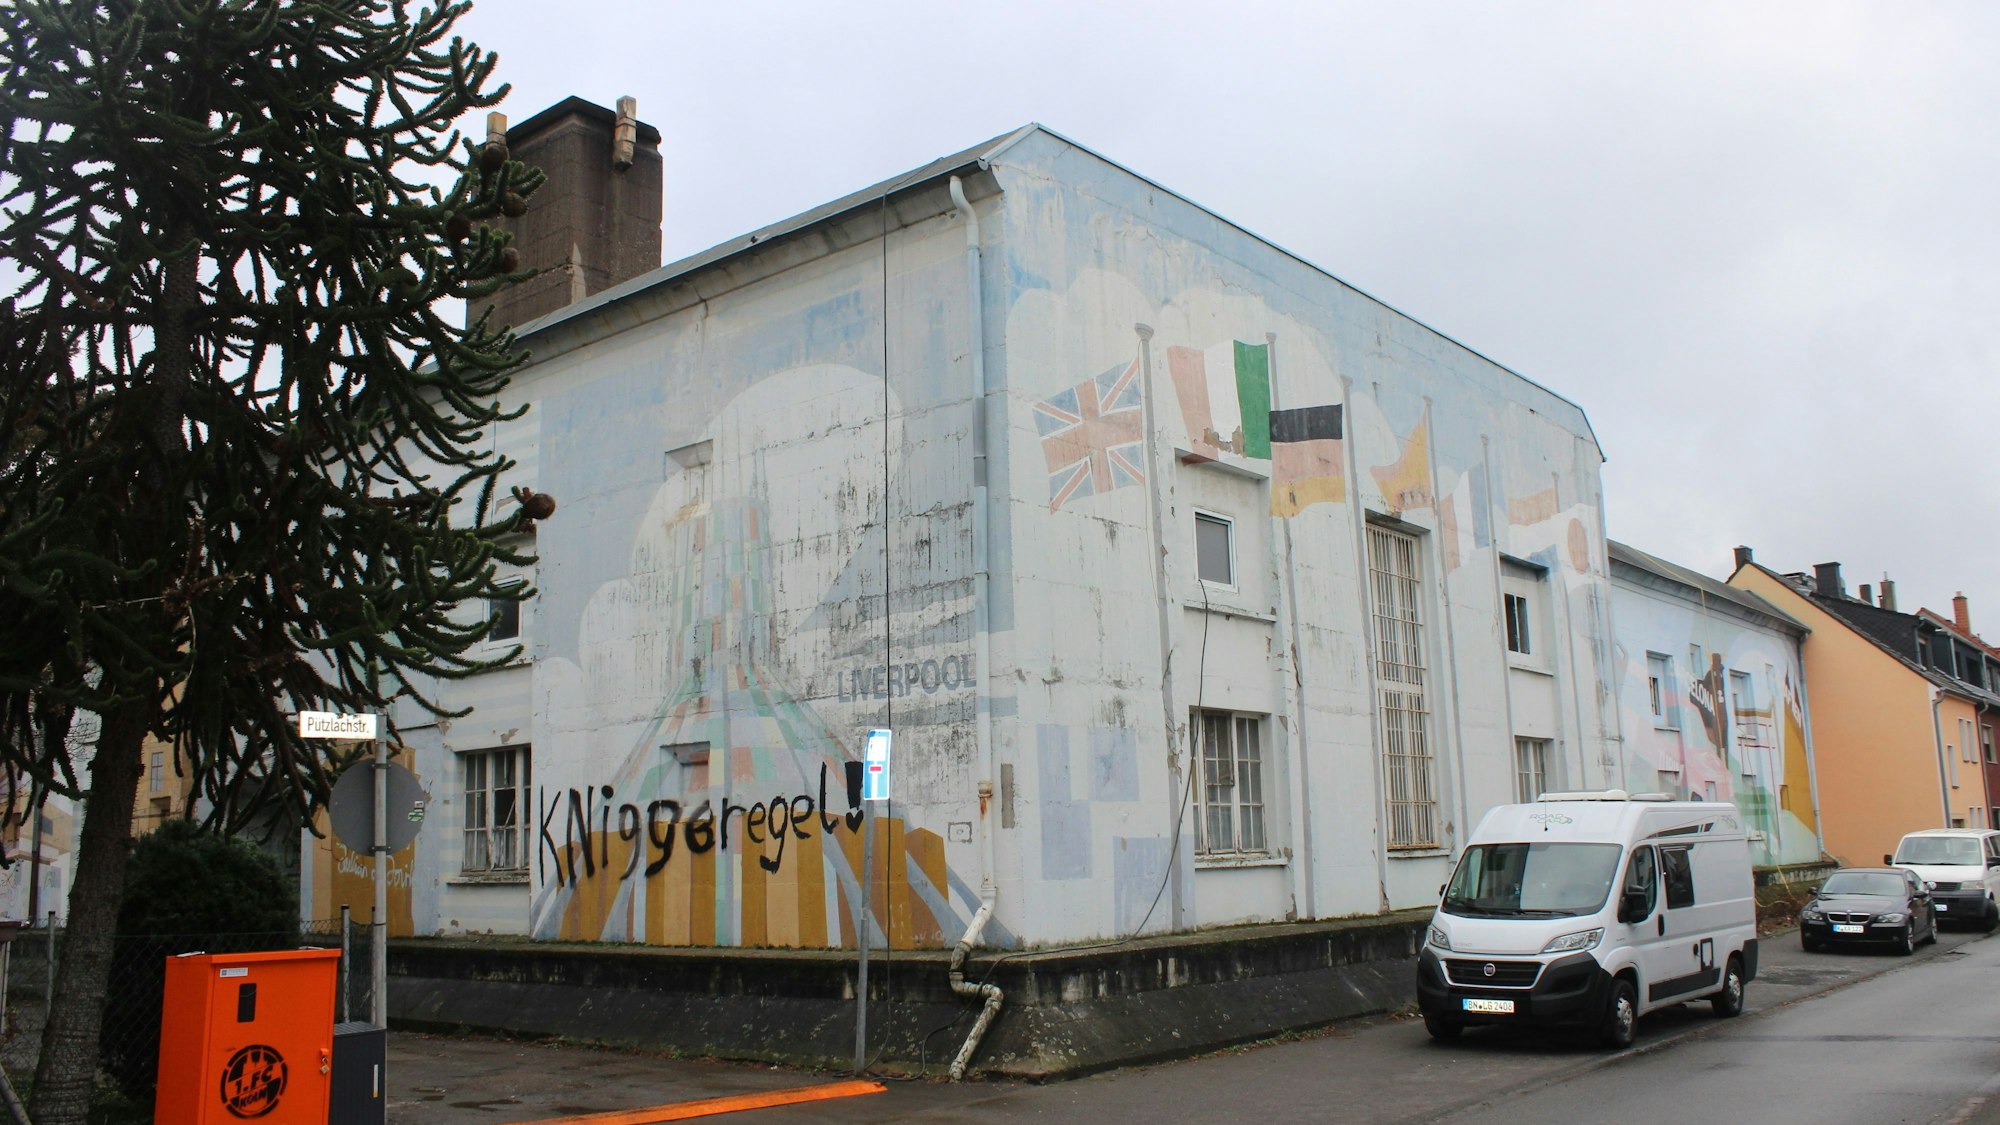 Ein würfelförmiges mit Graffiti besprühtes Gebäude steht an einer Straßenecke.